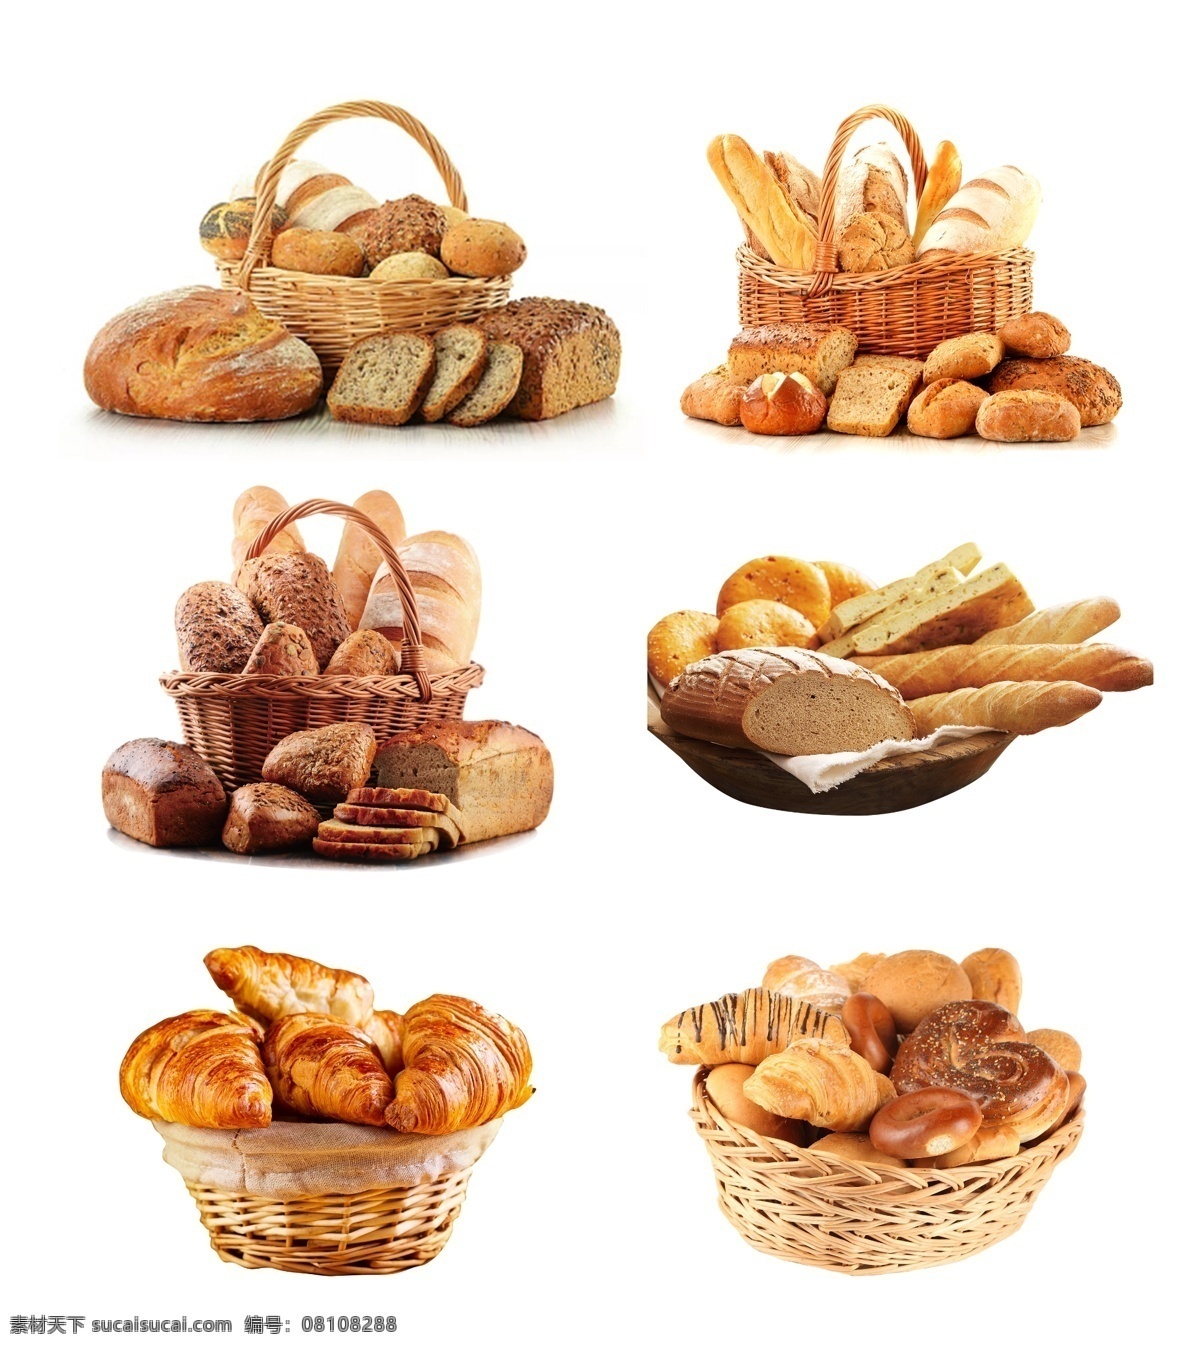 面包素材 营养面包 燕麦面包 圆形面包 芝麻面包 麻花面包 蛋挞 糕点 法式蛋糕 烤面包